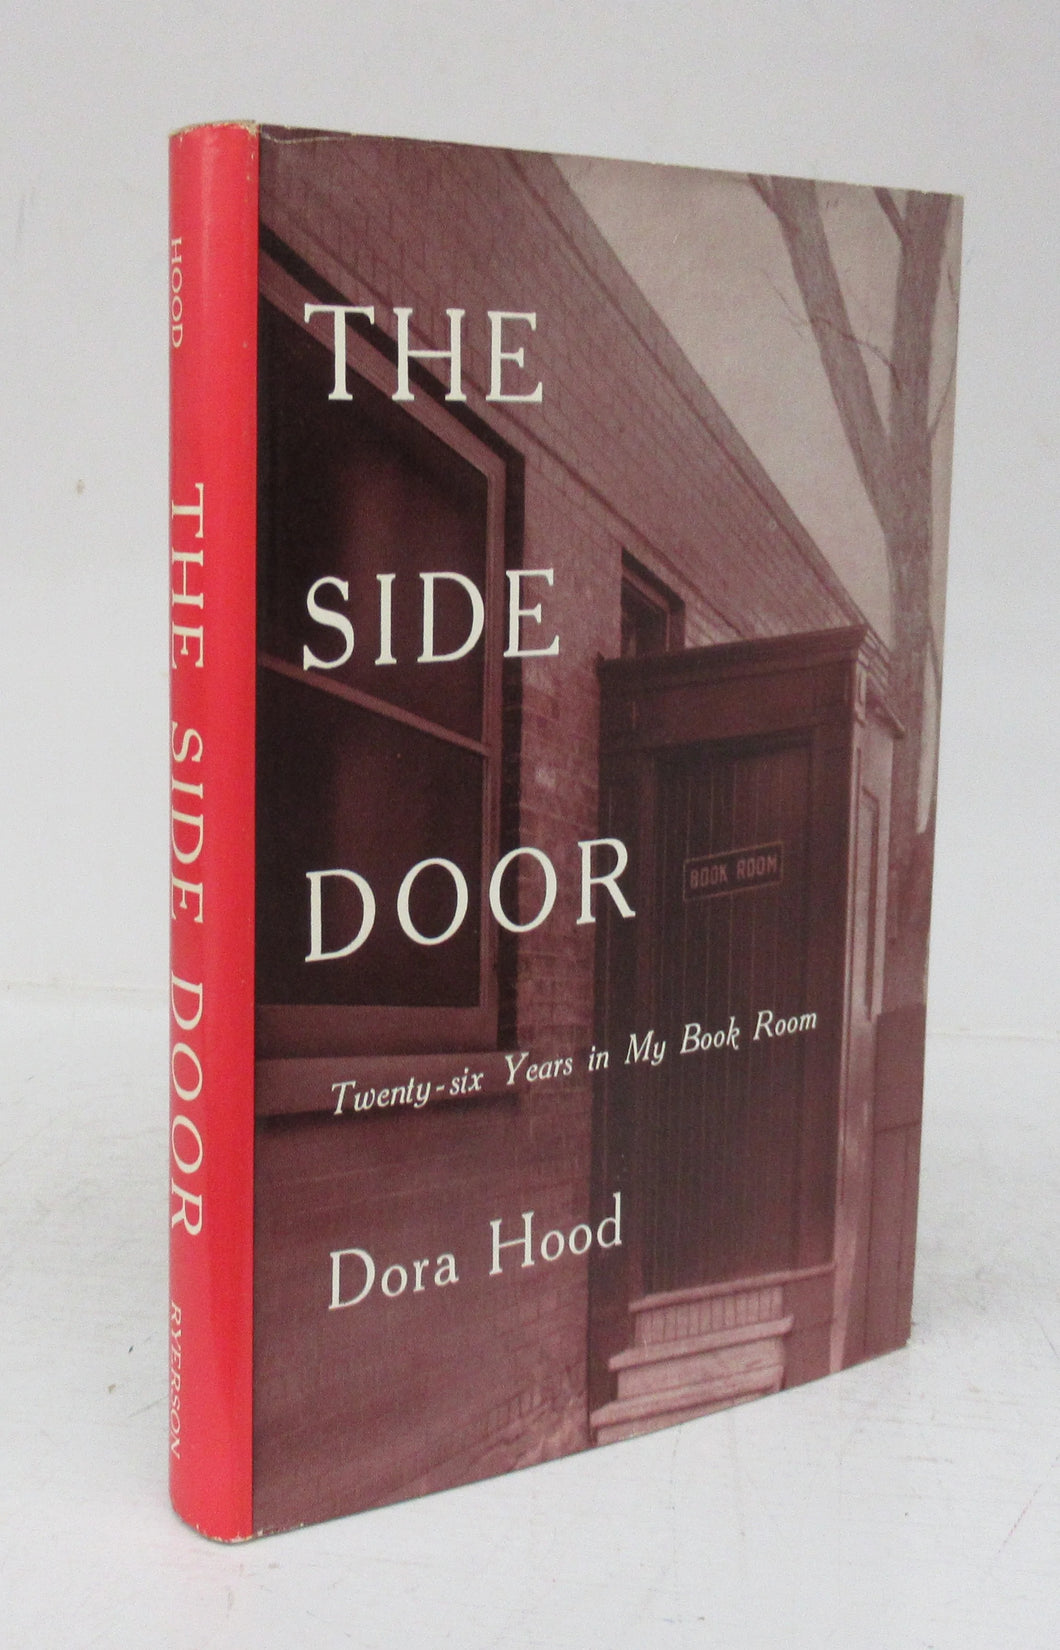 The Side Door: Twenty-six Years in My Book Room